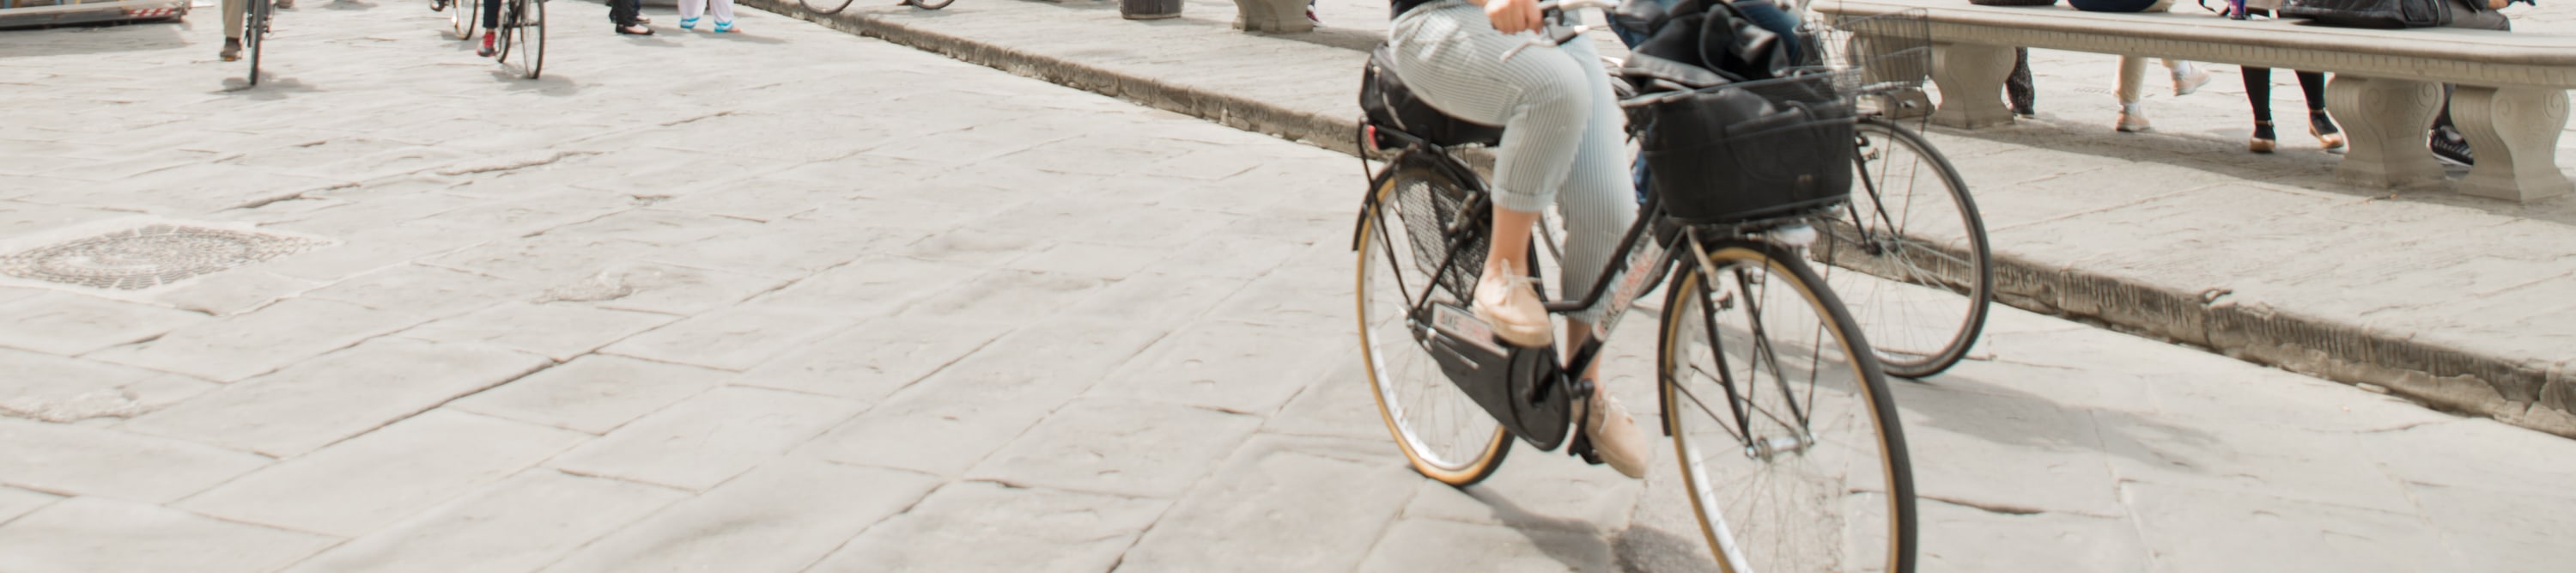 佛羅倫斯復古單車之旅 & 意式雪糕品嚐